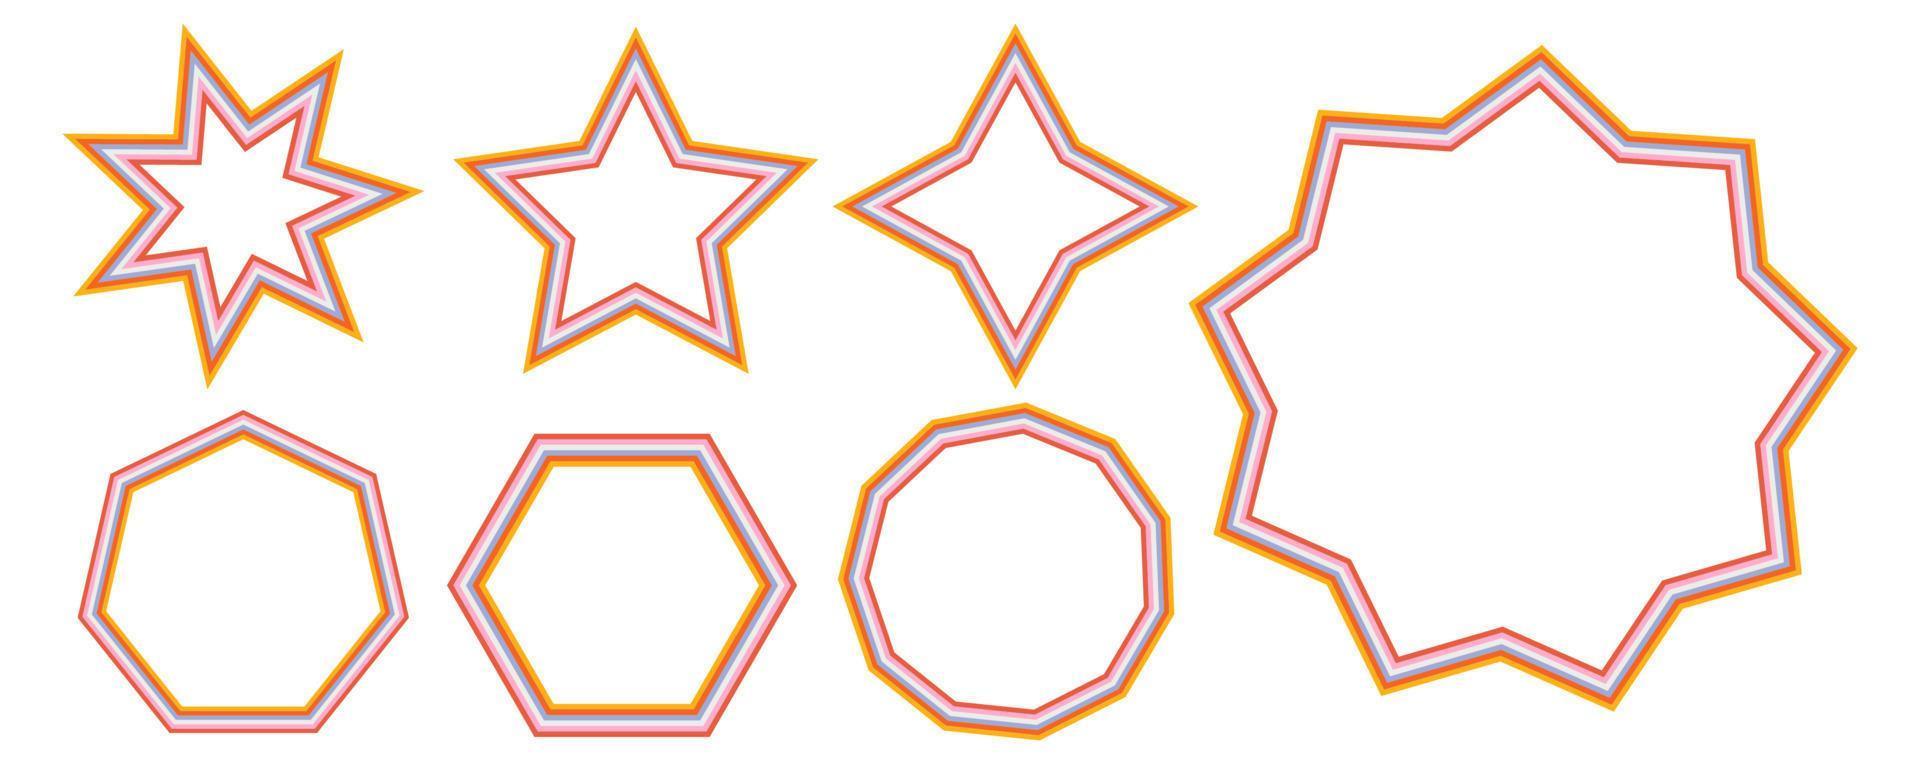 conjunto de marcos de arcoíris en estilo hippie de la década de 1970. patrones retro vintage 70 surco. colección de marco redondo, estrella, rombo y cuadrado. diseño de ilustración vectorial aislado. vector